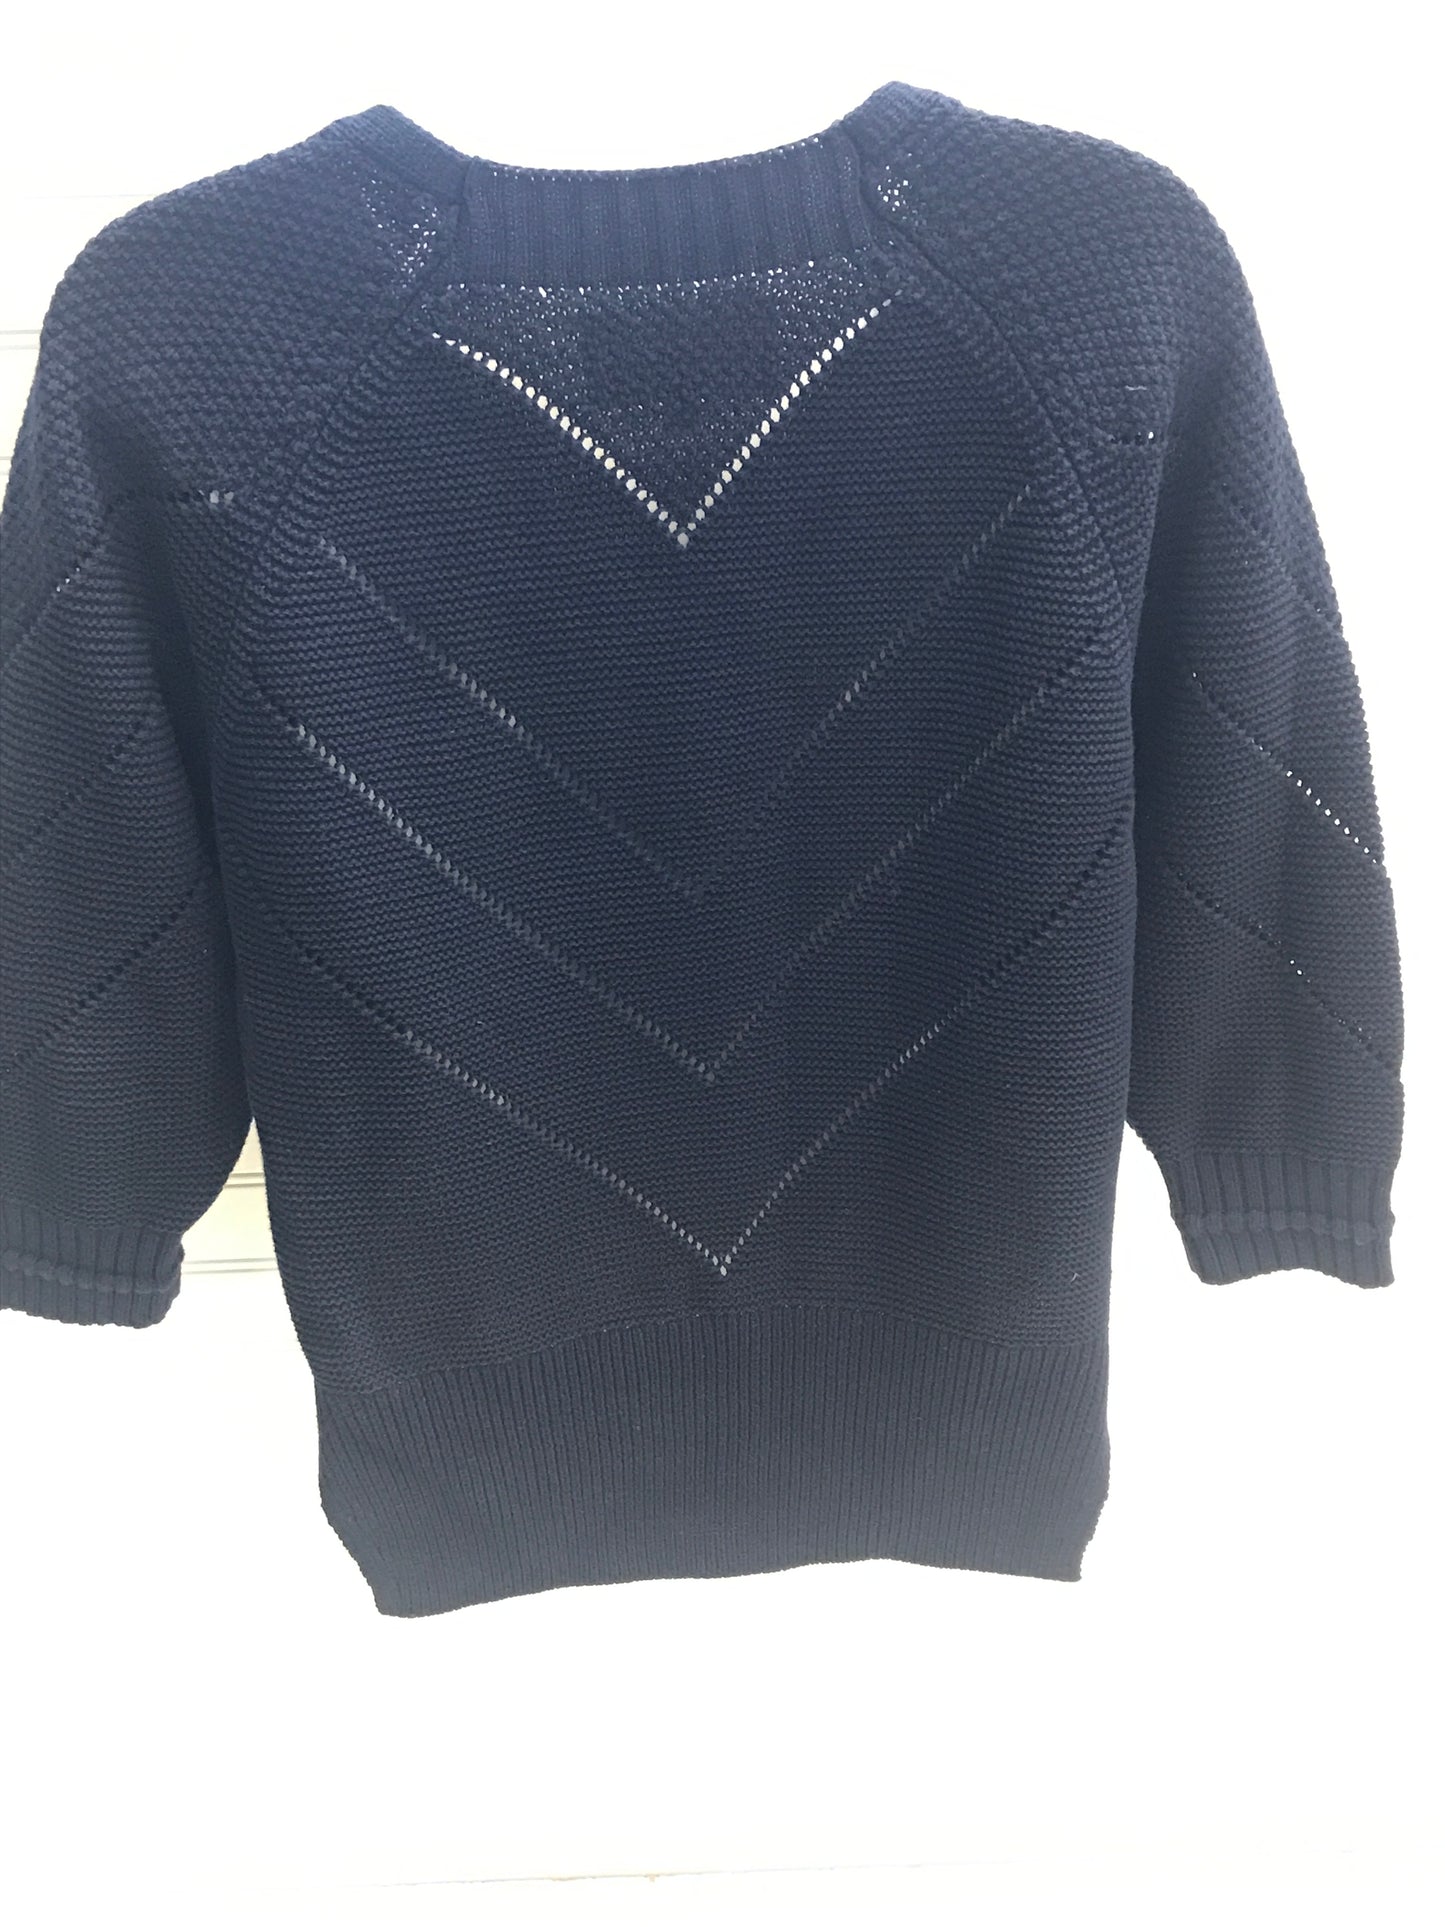 Sweater Short Sleeve By Bruchu  Walker  Size: S